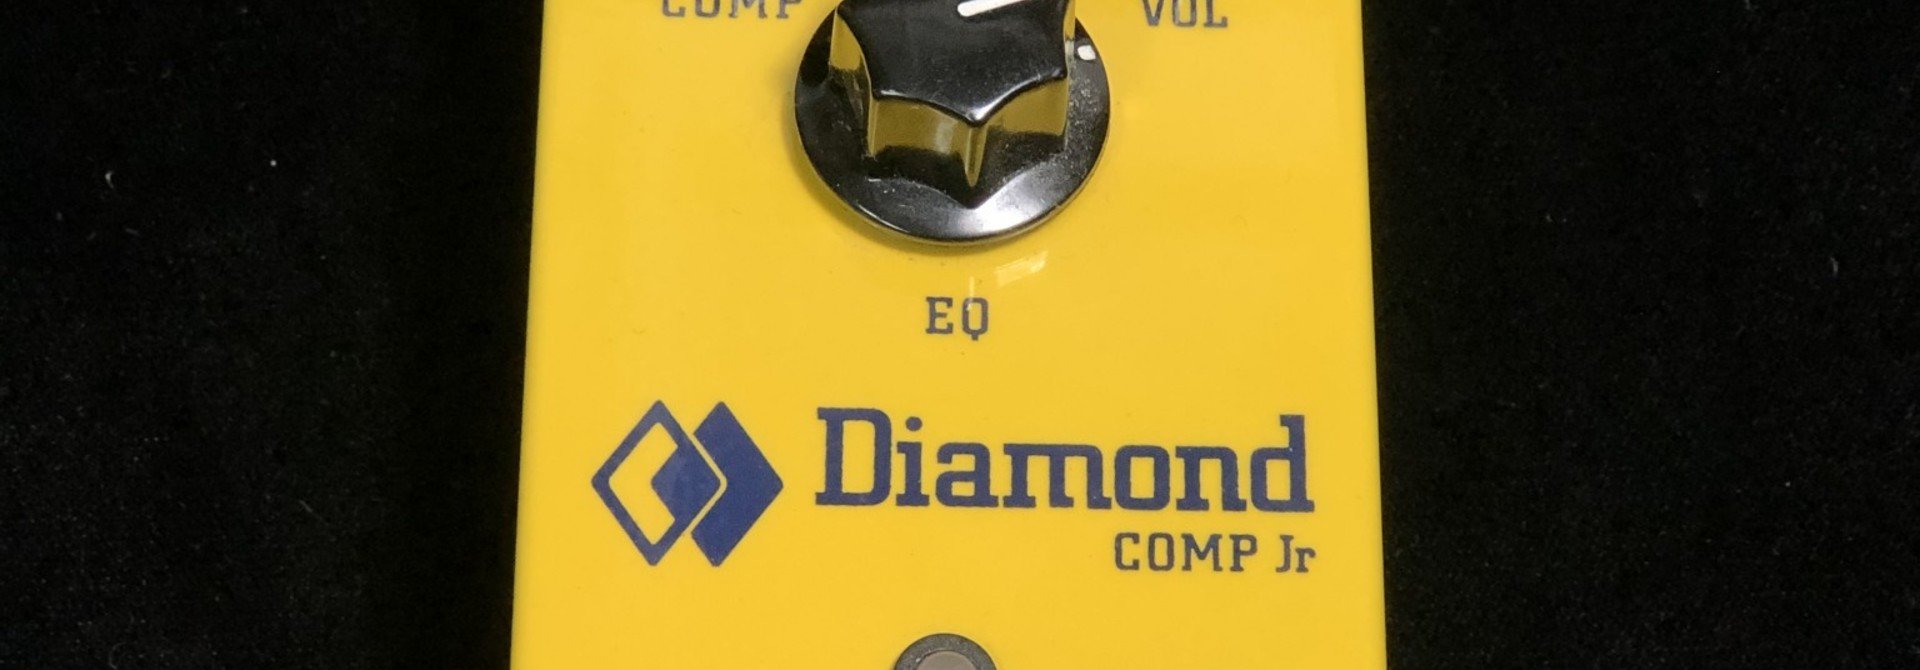 Diamond Comp Jr Compressor